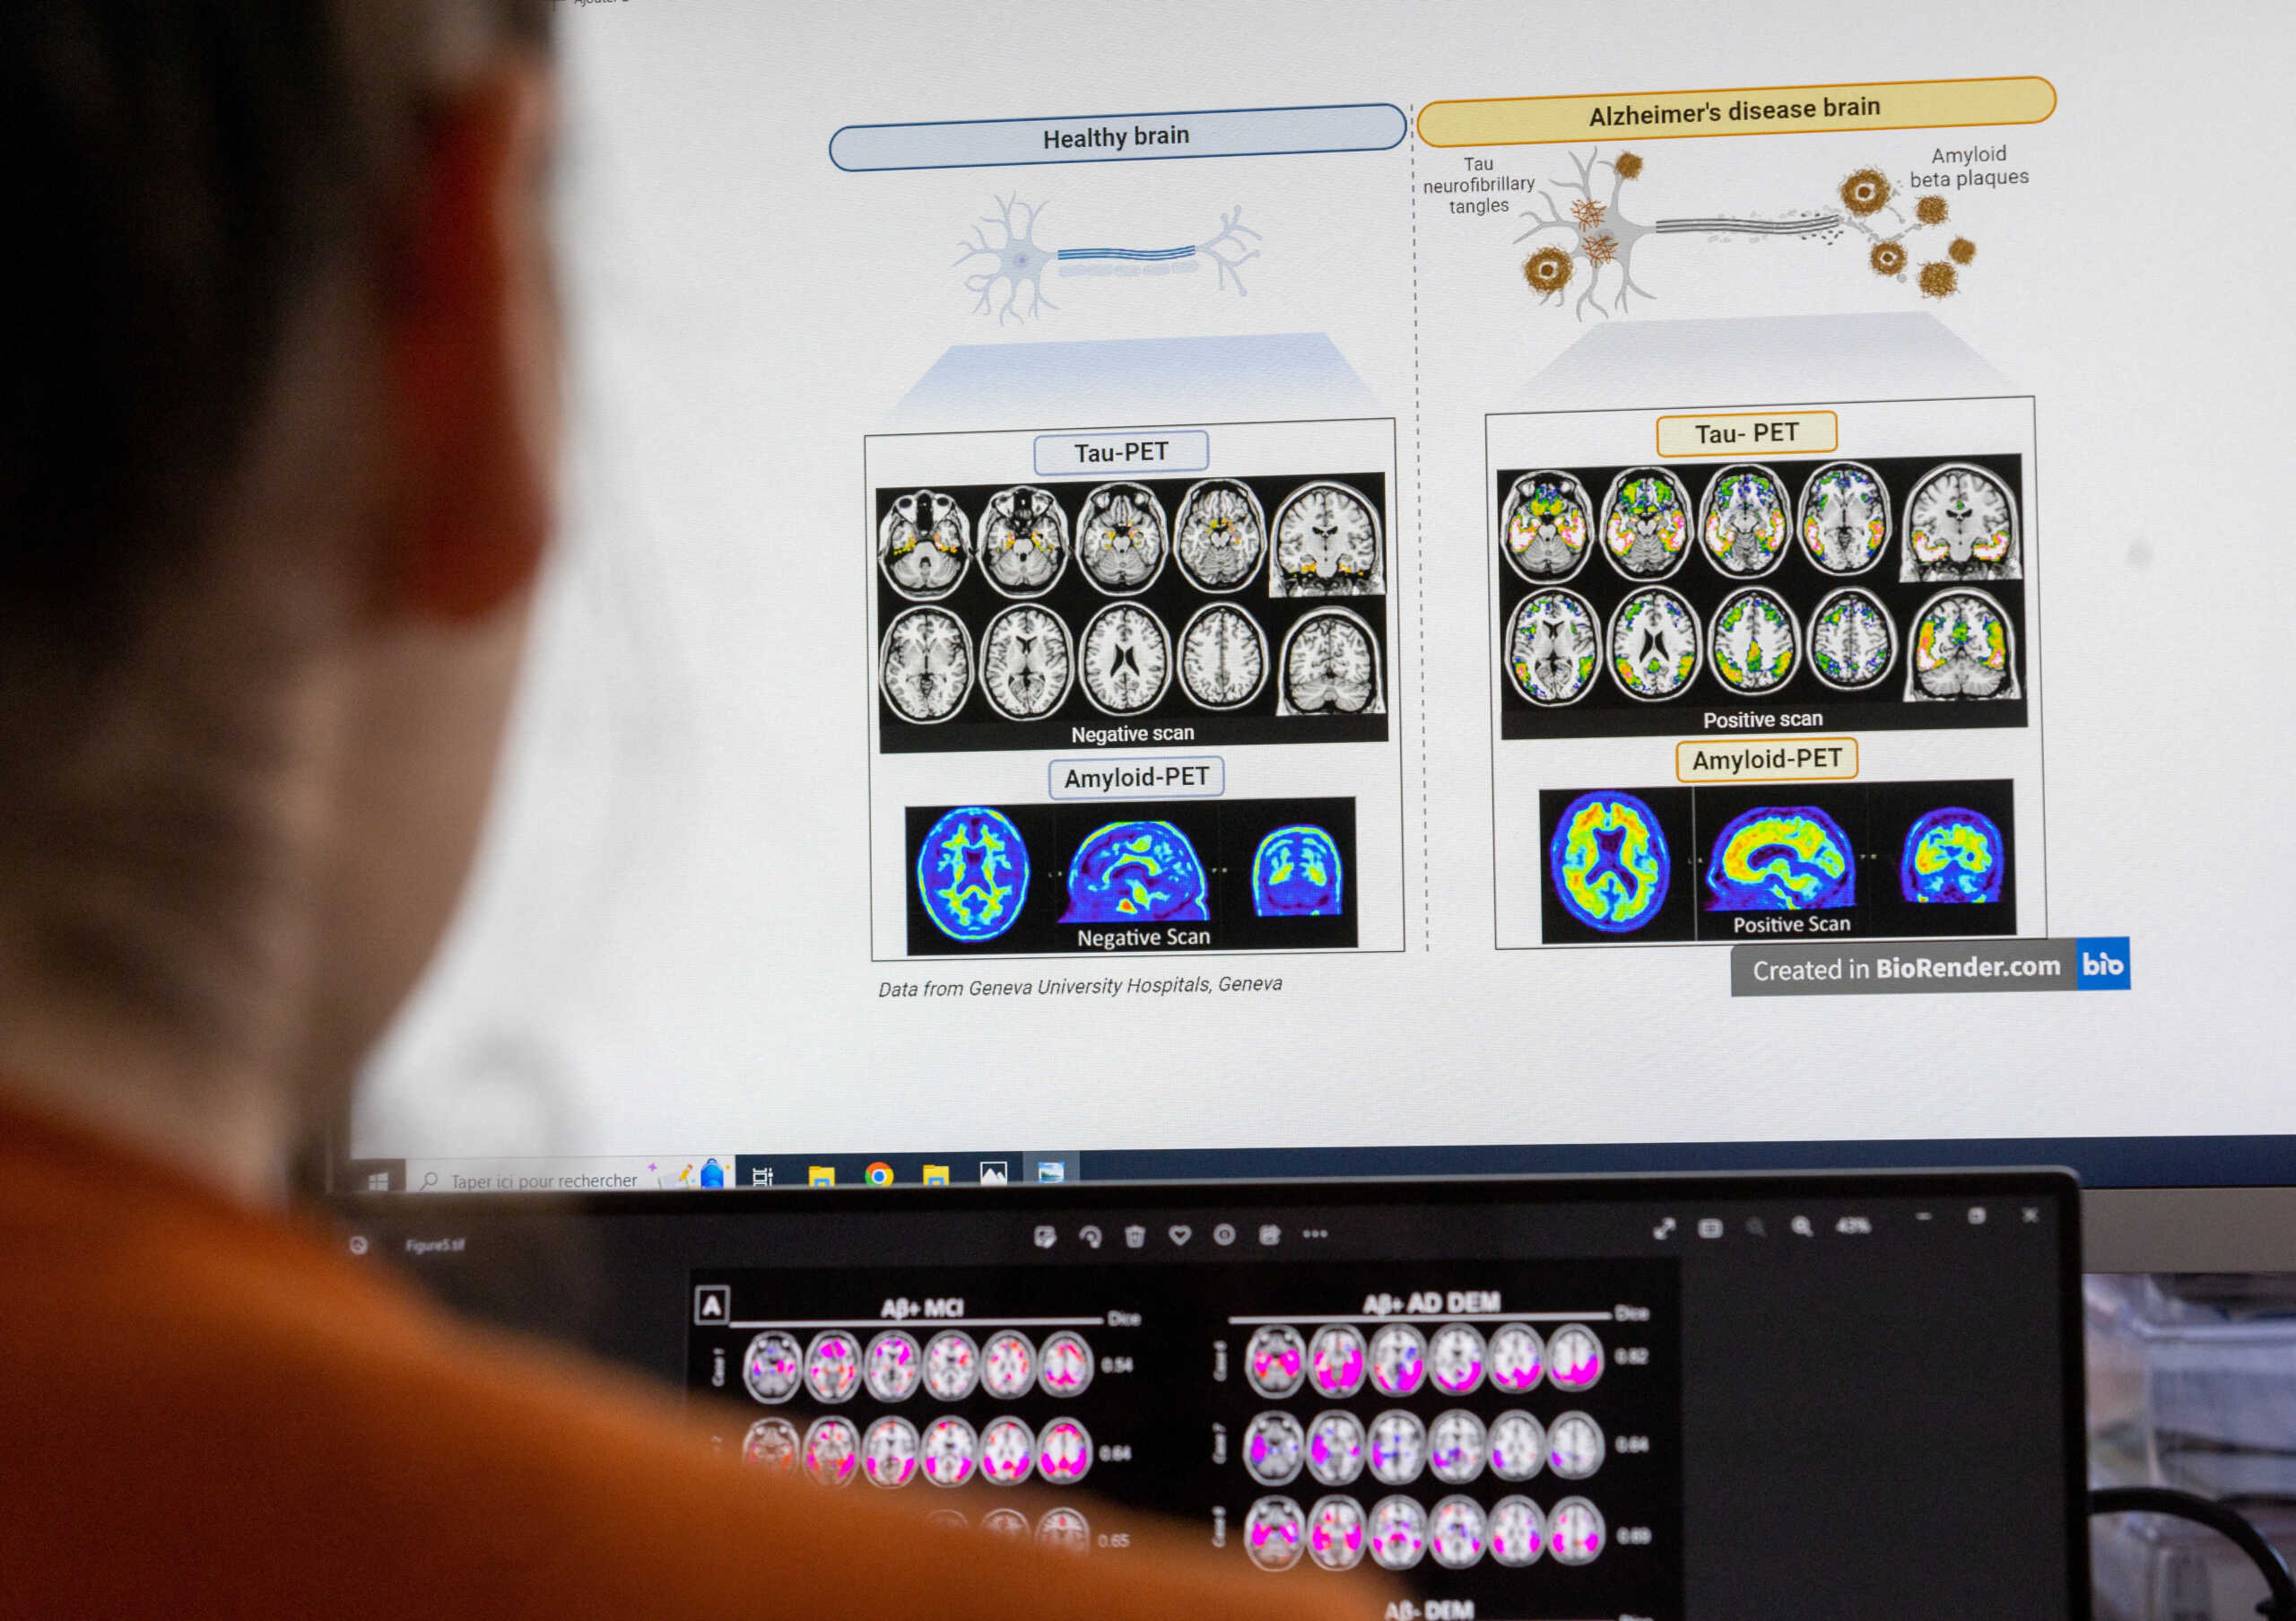 Εργαλείο τεχνητής νοημοσύνης αποκωδικοποιεί το γονιδίωμα του καρκίνου του εγκεφάλου